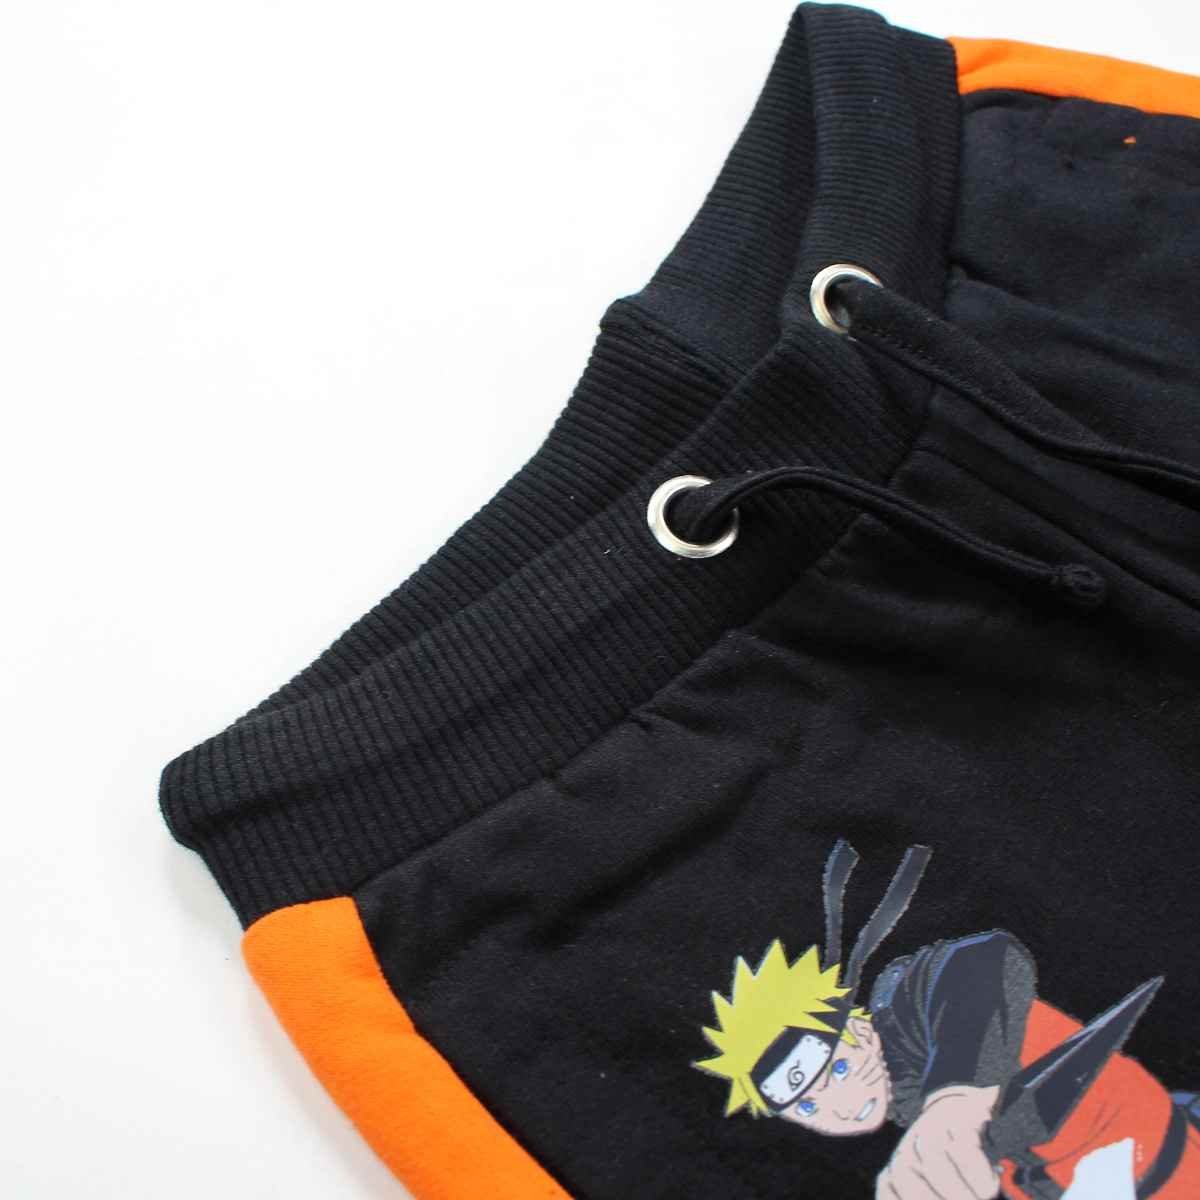 Naruto Shorts Naruto Shippuden Shorts Gr. 152 110 Kinder Jungen Baumwolle bis 100% Schwarz